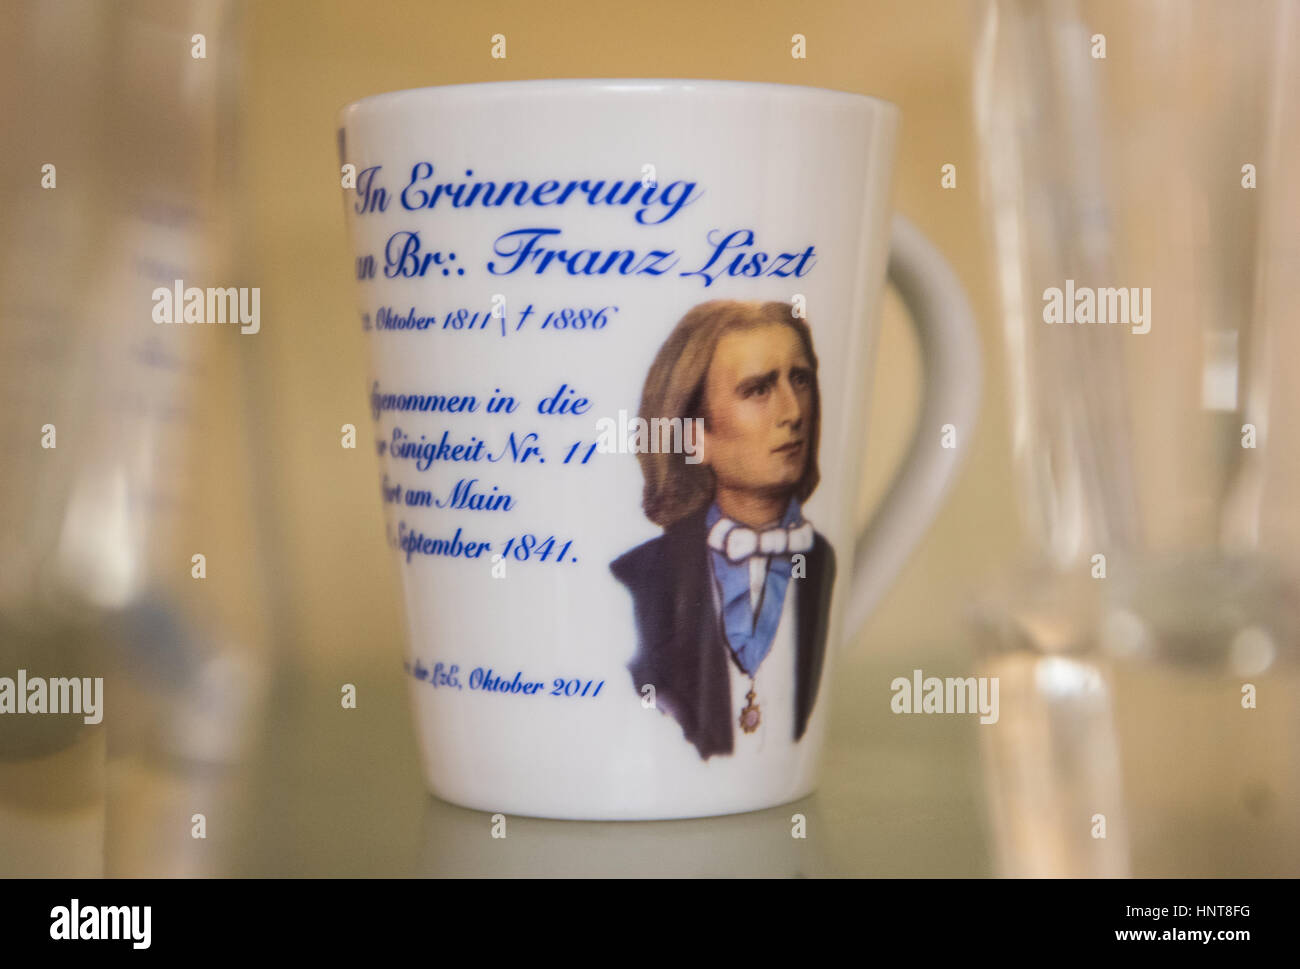 Una tazza con una pittura del compositore Franz Liszt può essere visto presso il lodge in Frankfurt/Main, Germania, 15 febbraio 2017. La loggia massonica 'Zur Einigkeit' (lit. 'Per Unity") è stata fondata nel 1742 in occasione dell elezione di Kaiser Karl VII. Foto: Andreas Arnold/dpa Foto Stock